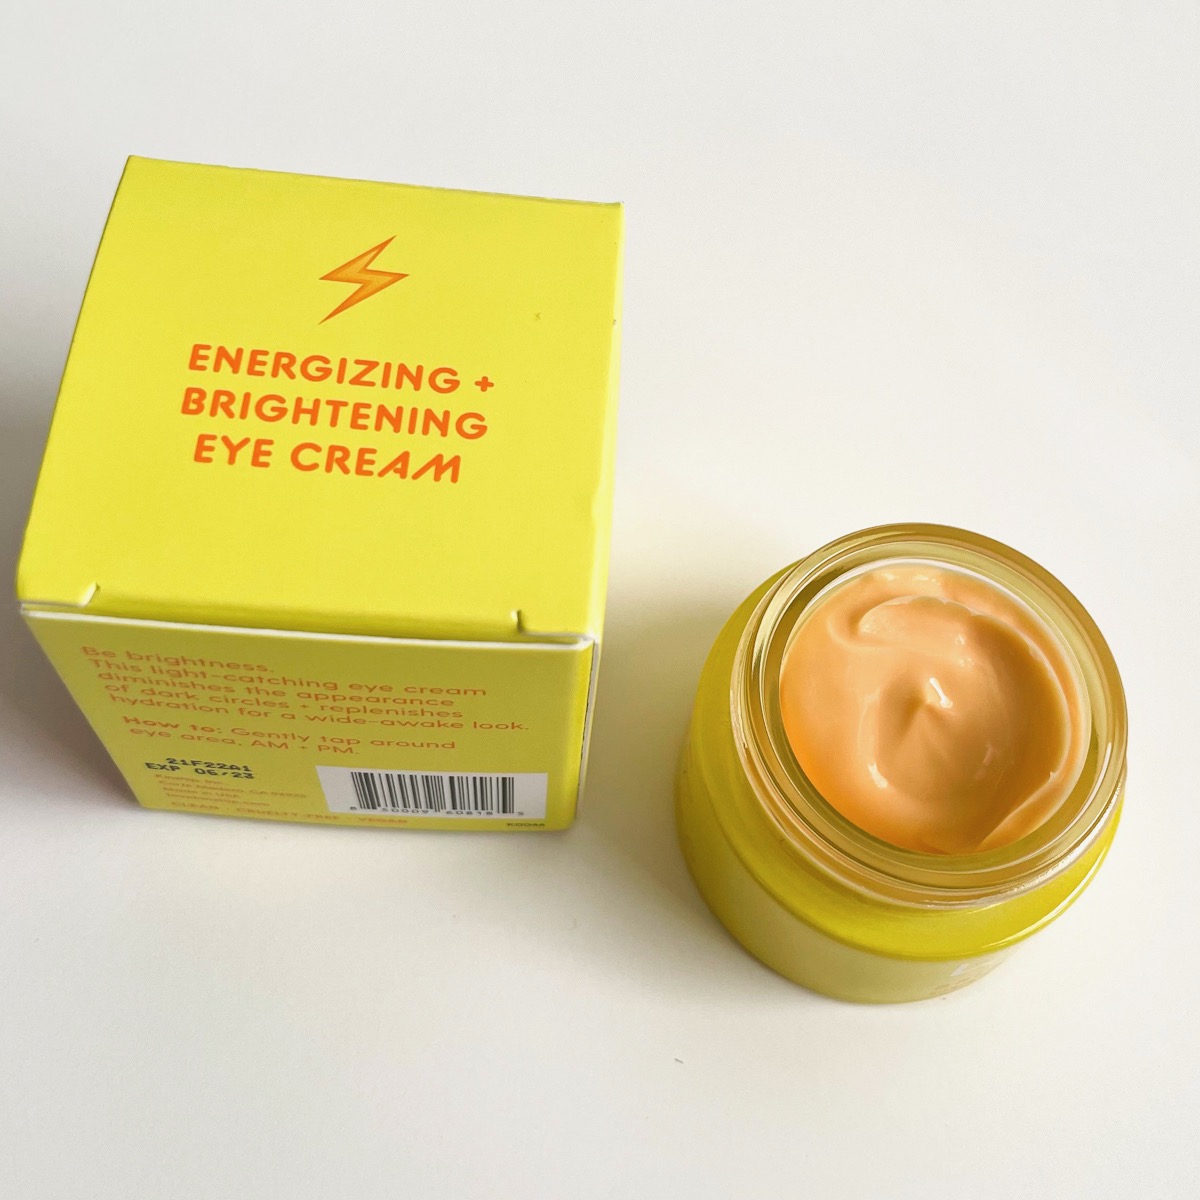 alternate view of yellow box next to opened yellow jar showing peach eye cream